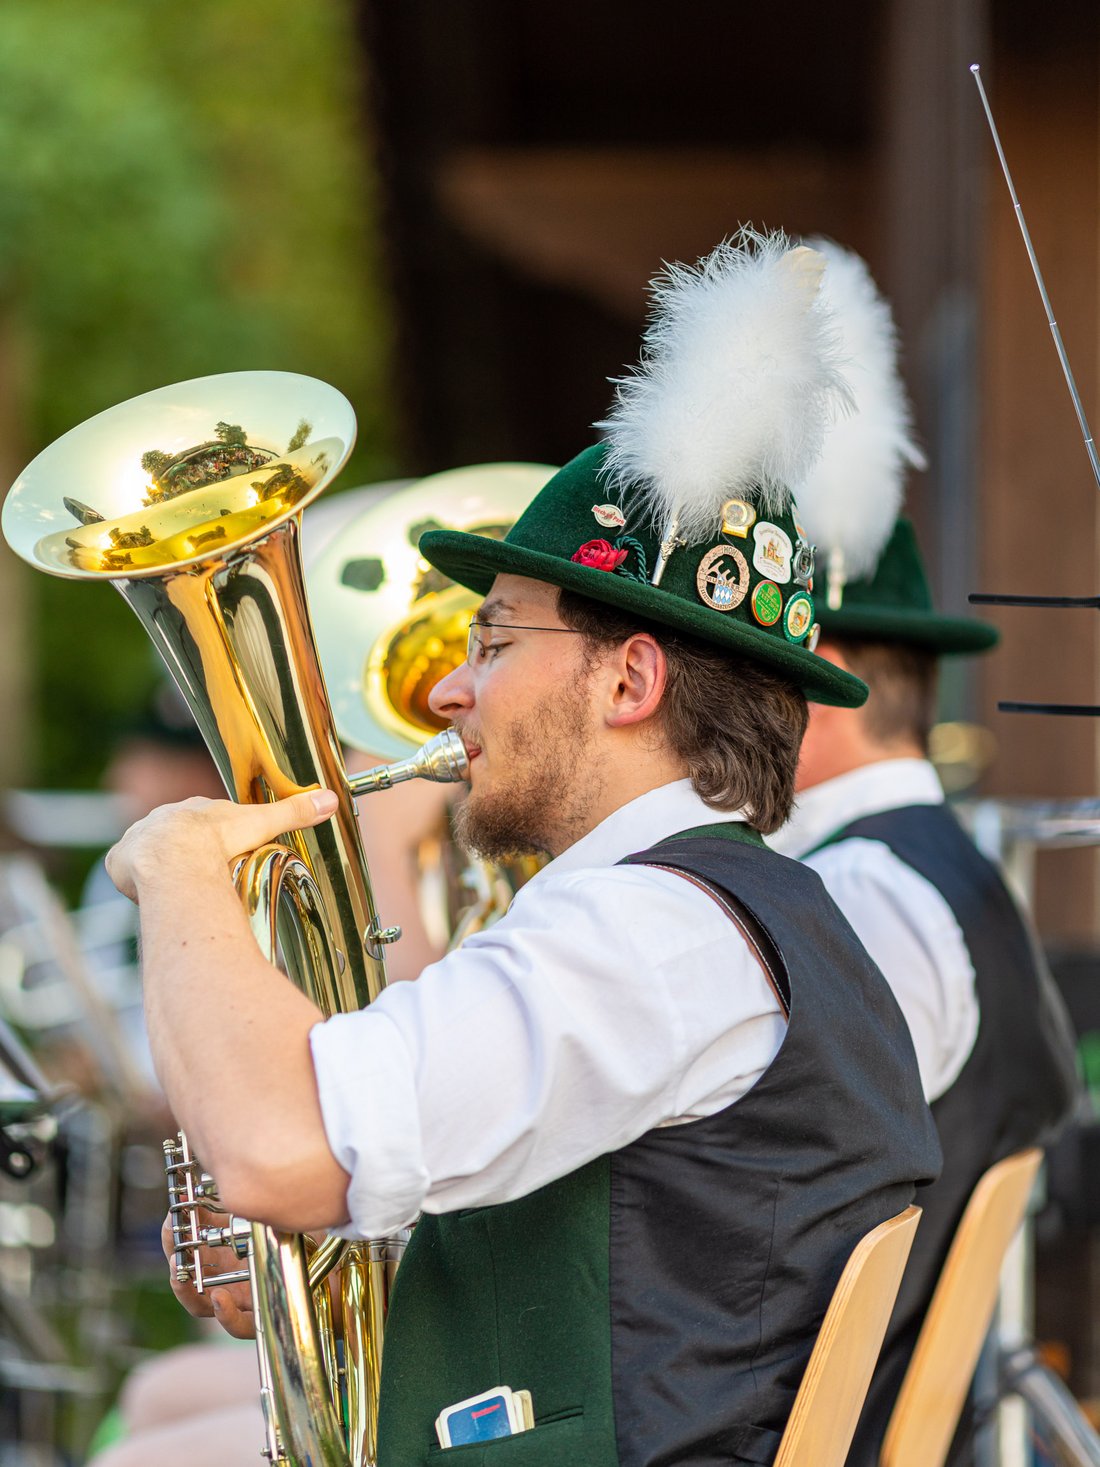 Musiker mit bayerischer Tracht spielt Bariton